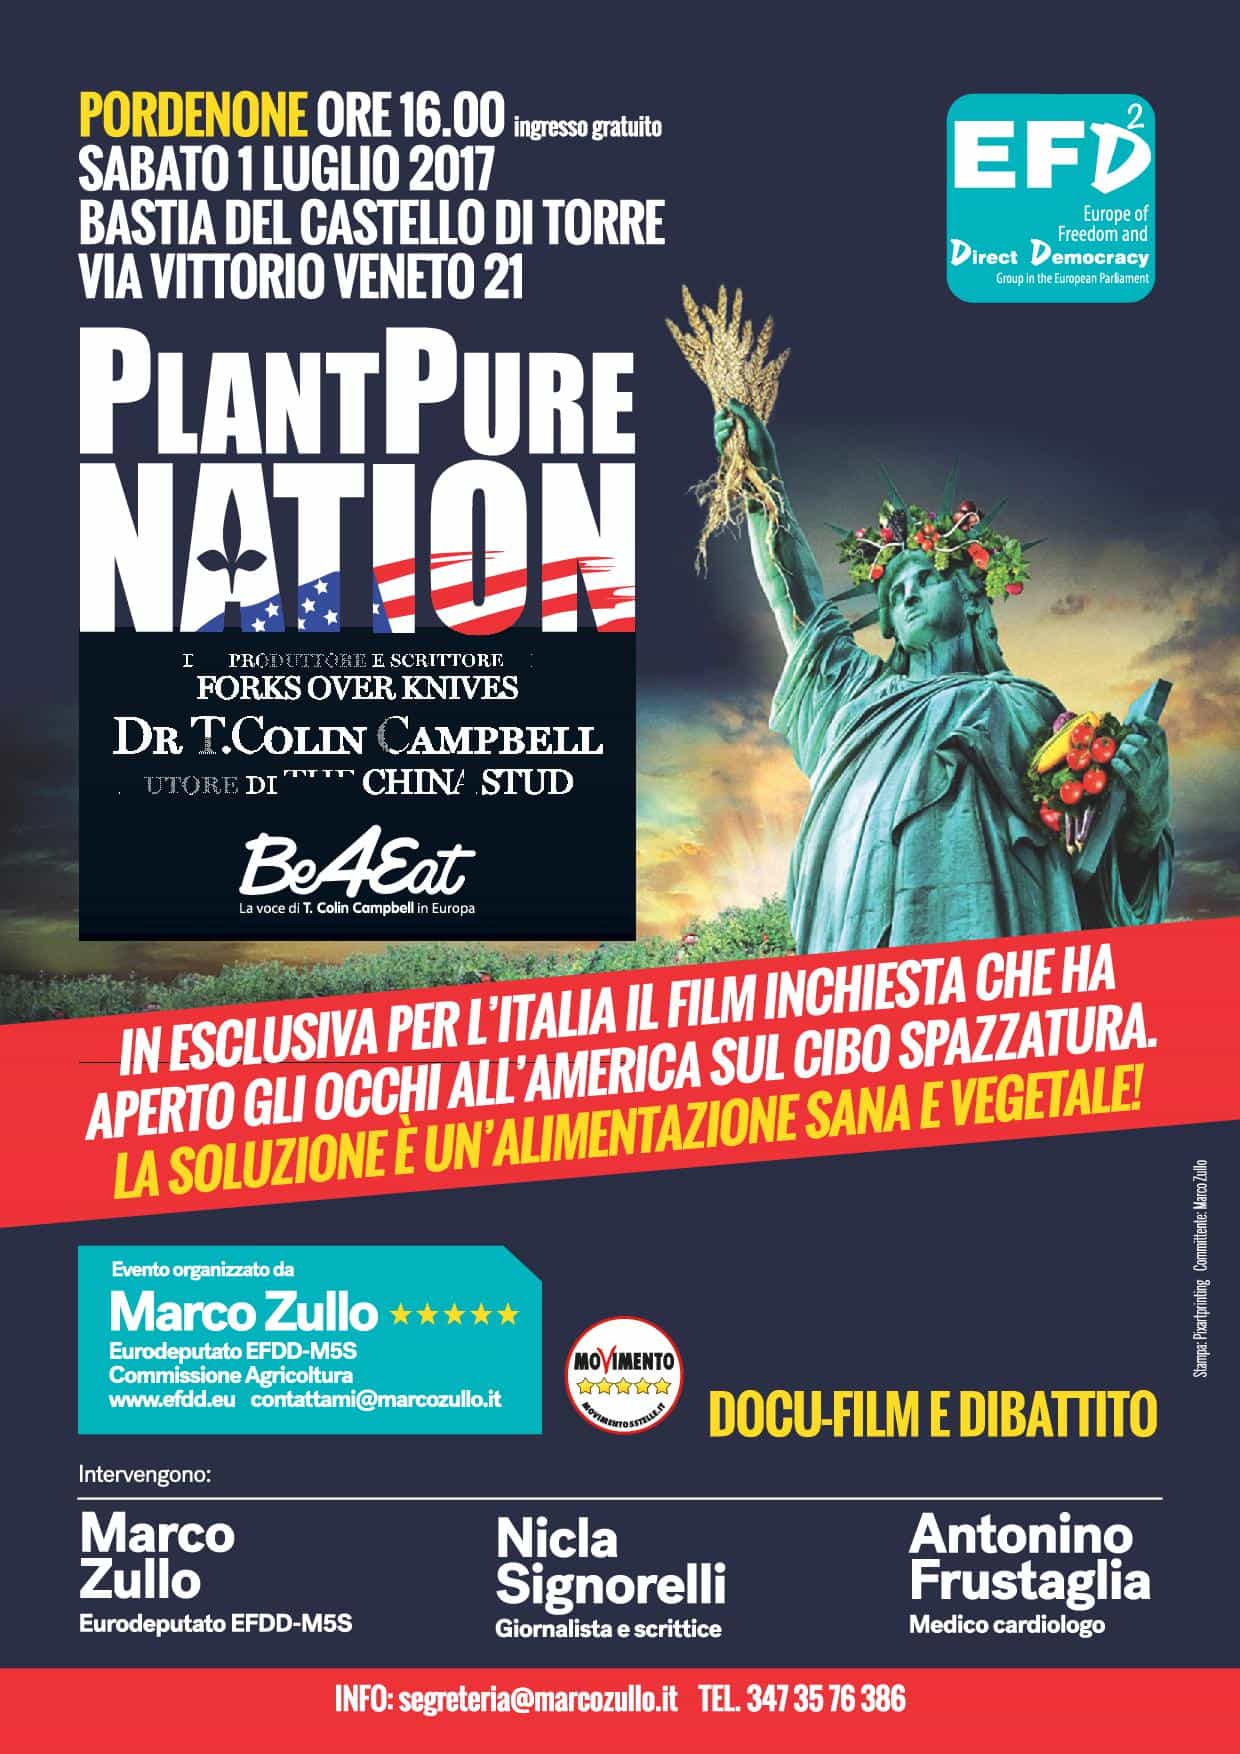 Plant Pure Nation - Pordenone @ Bastia del Castello di Torre | Pordenone | Friuli-Venezia Giulia | Italia